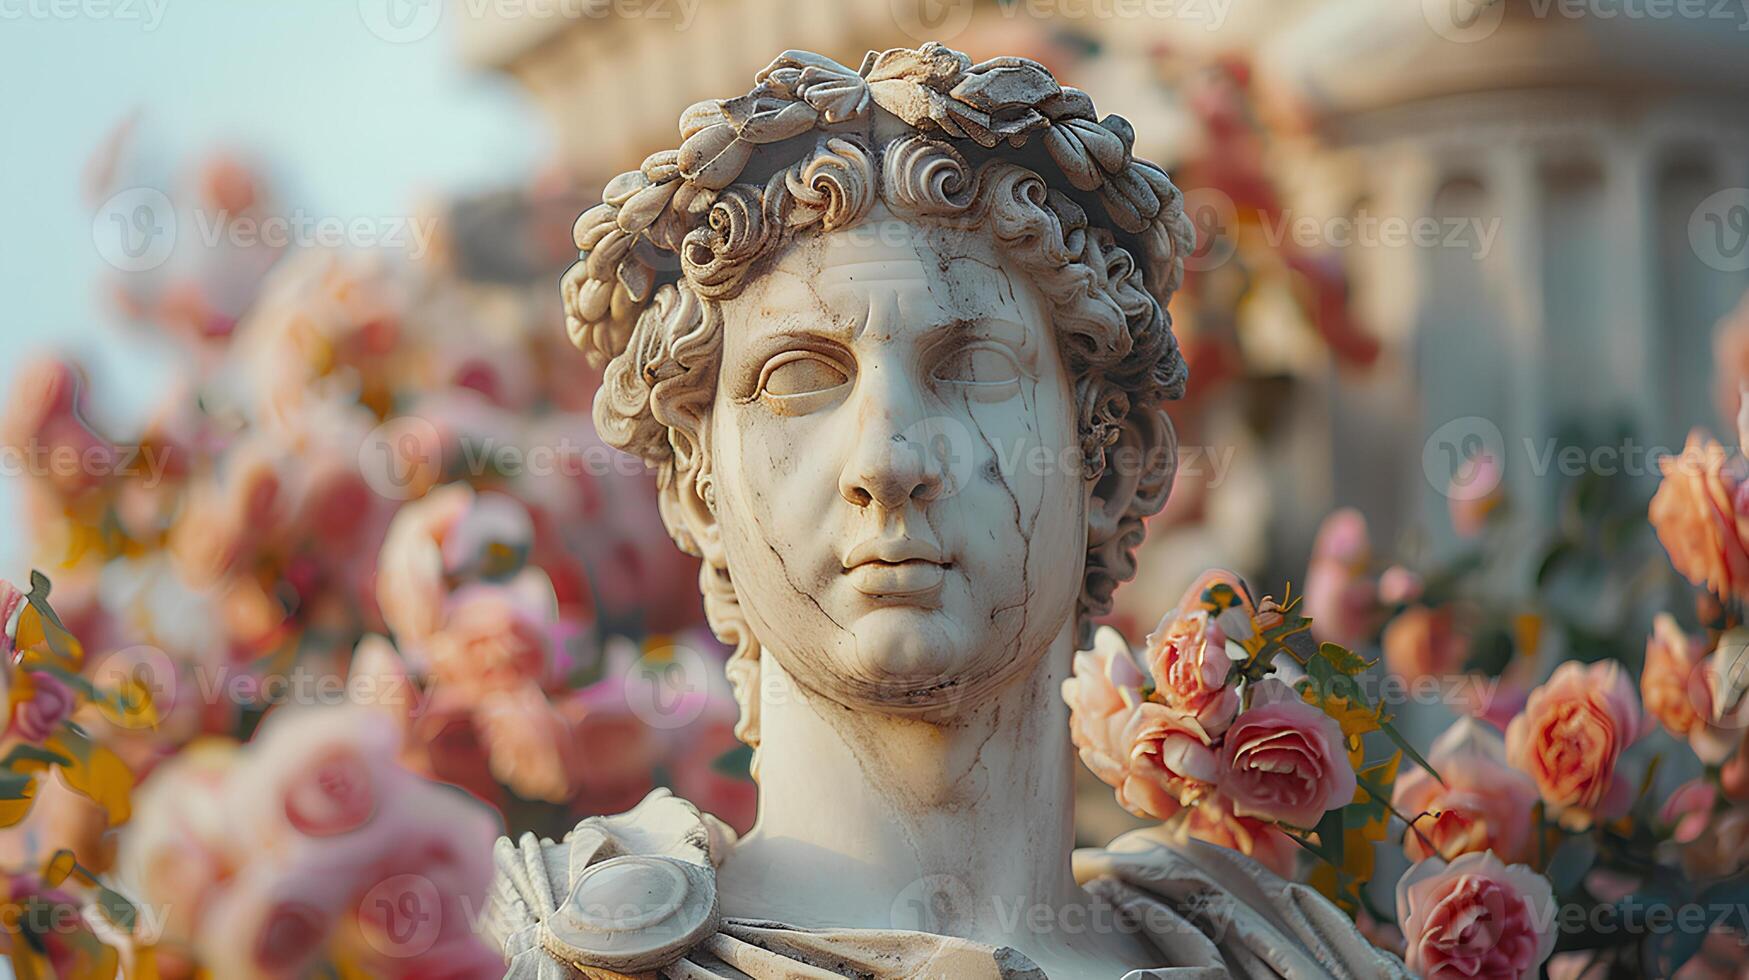 oude Grieks standbeeld van een Mens. Romeins standbeeld van een edelman of een oude Grieks filosoof op zoek in de afstand. oude standbeeld foto